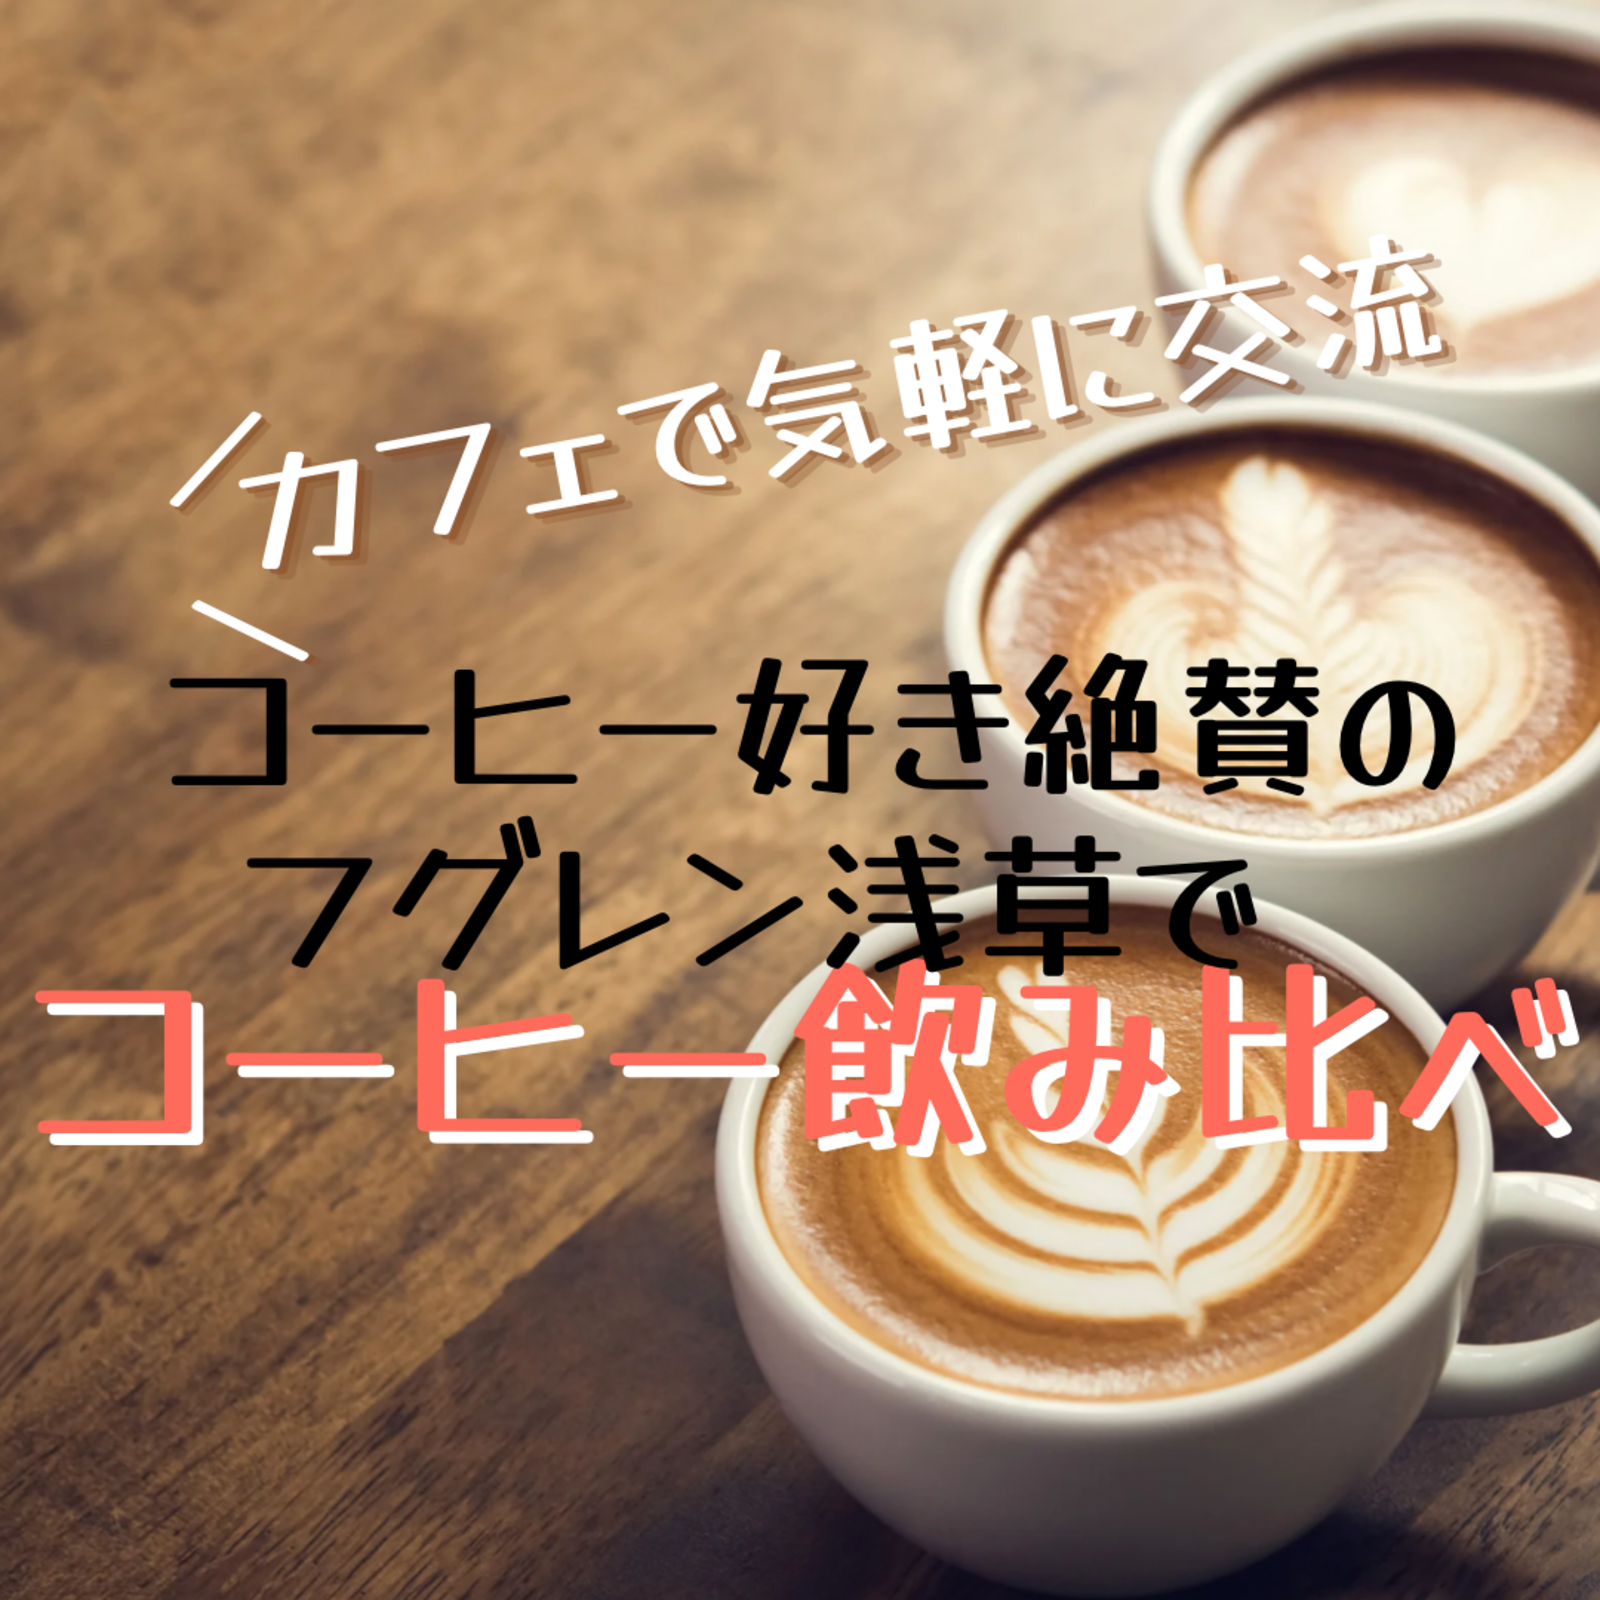 【コーヒー好きで友達作り】コーヒー飲み比べin浅草【少人数でゆったり友達作り】